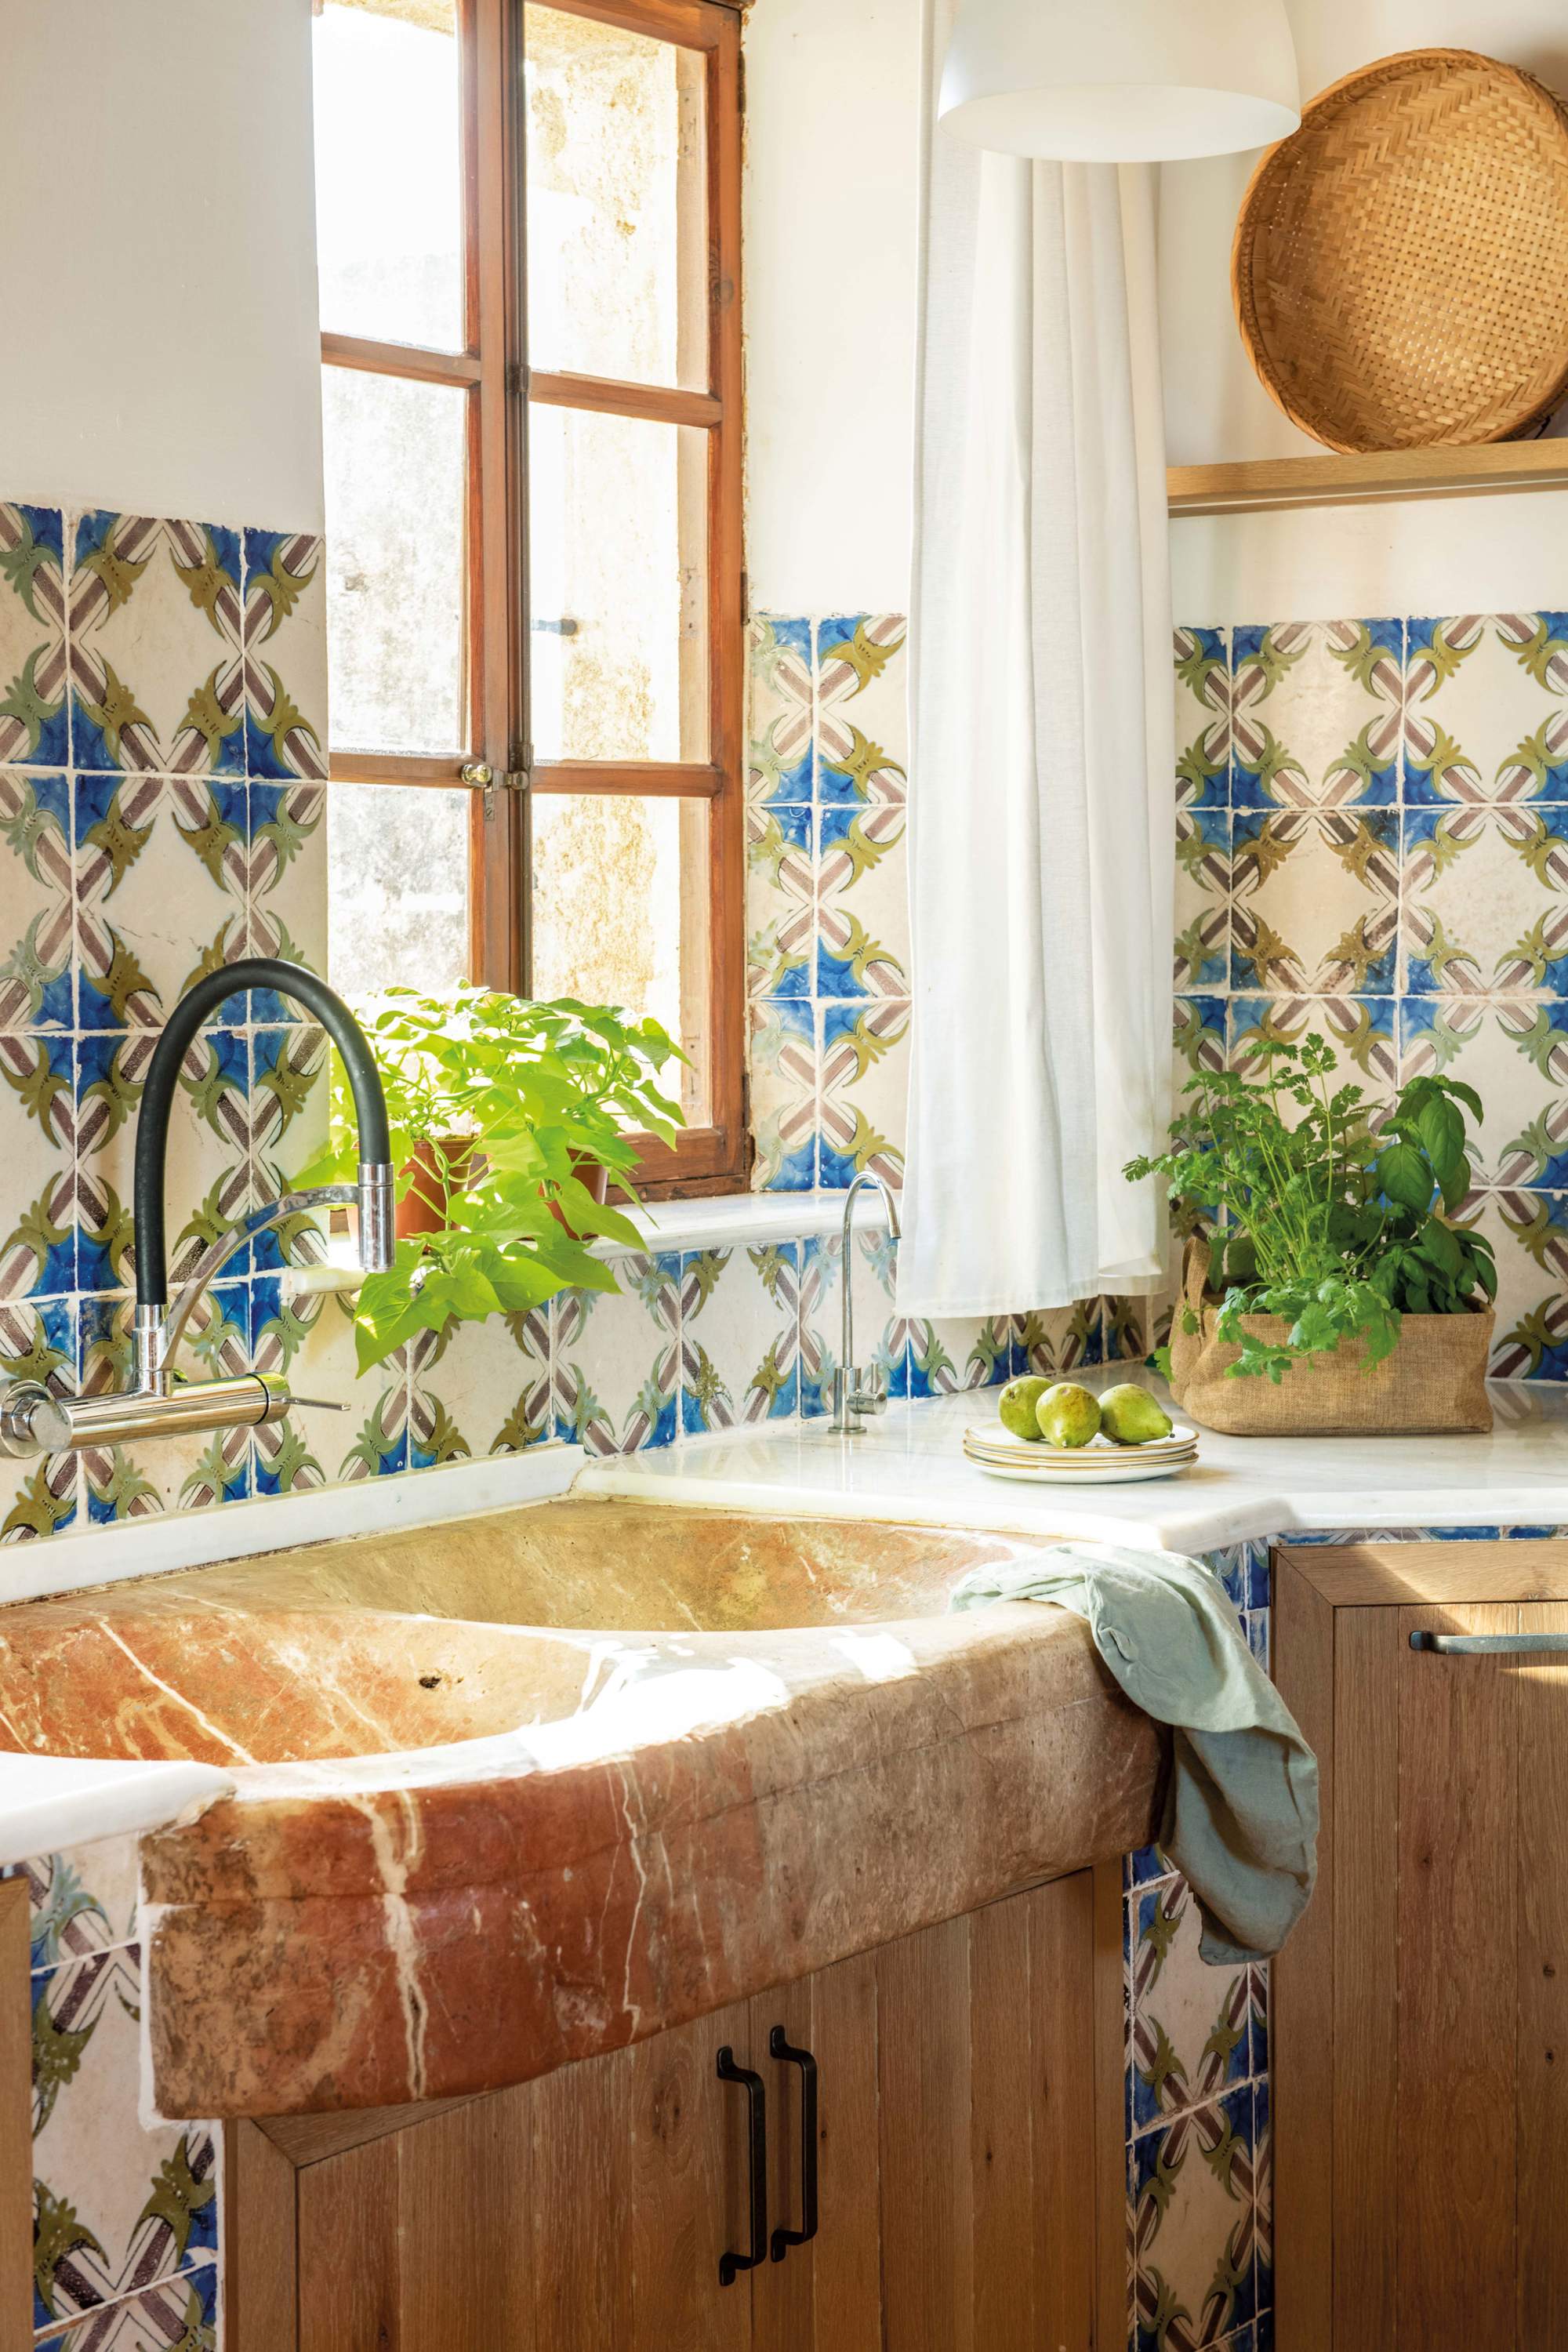 Detalle de cocina con fregadero de mármol y azulejos de colores